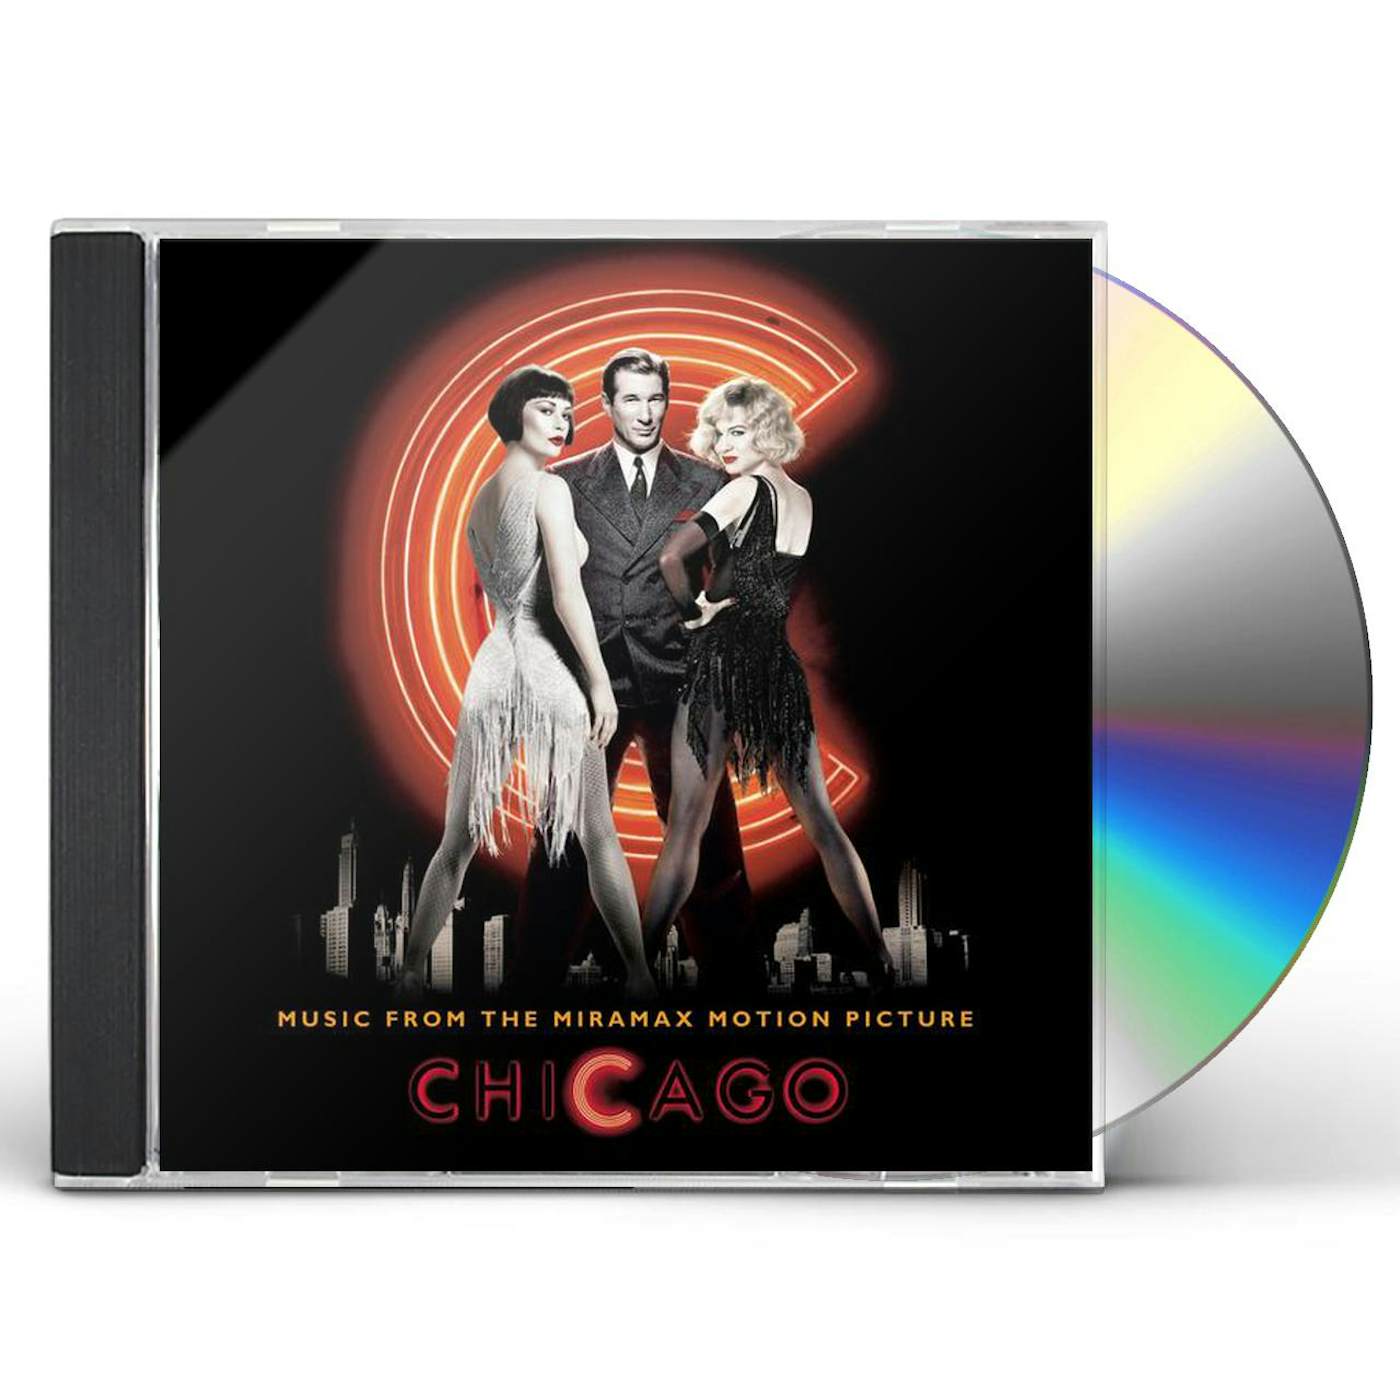 Ken The Album CD (Exclusive Cover)